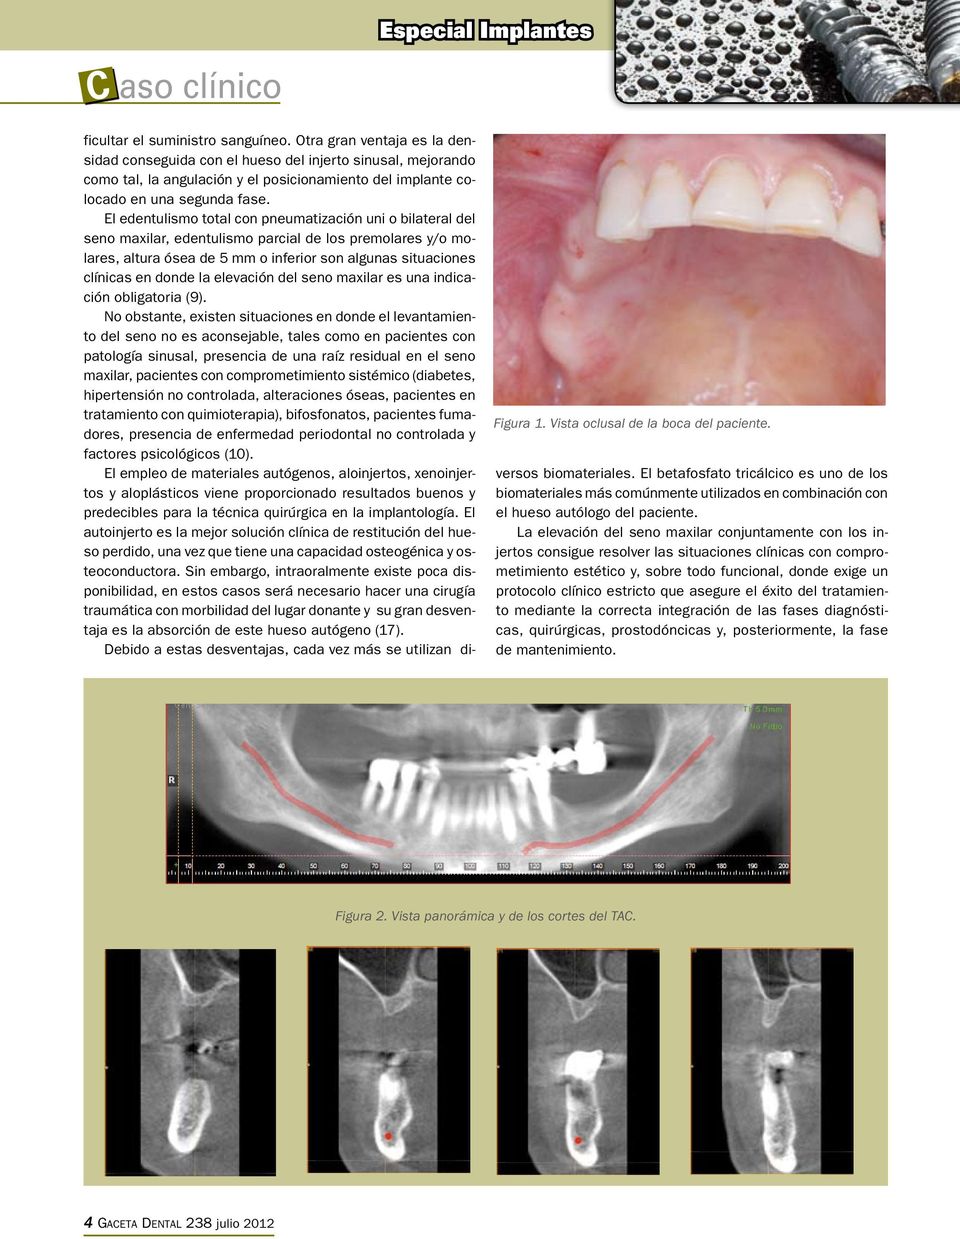 El edentulismo total con pneumatización uni o bilateral del seno maxilar, edentulismo parcial de los premolares y/o molares, altura ósea de 5 mm o inferior son algunas situaciones clínicas en donde